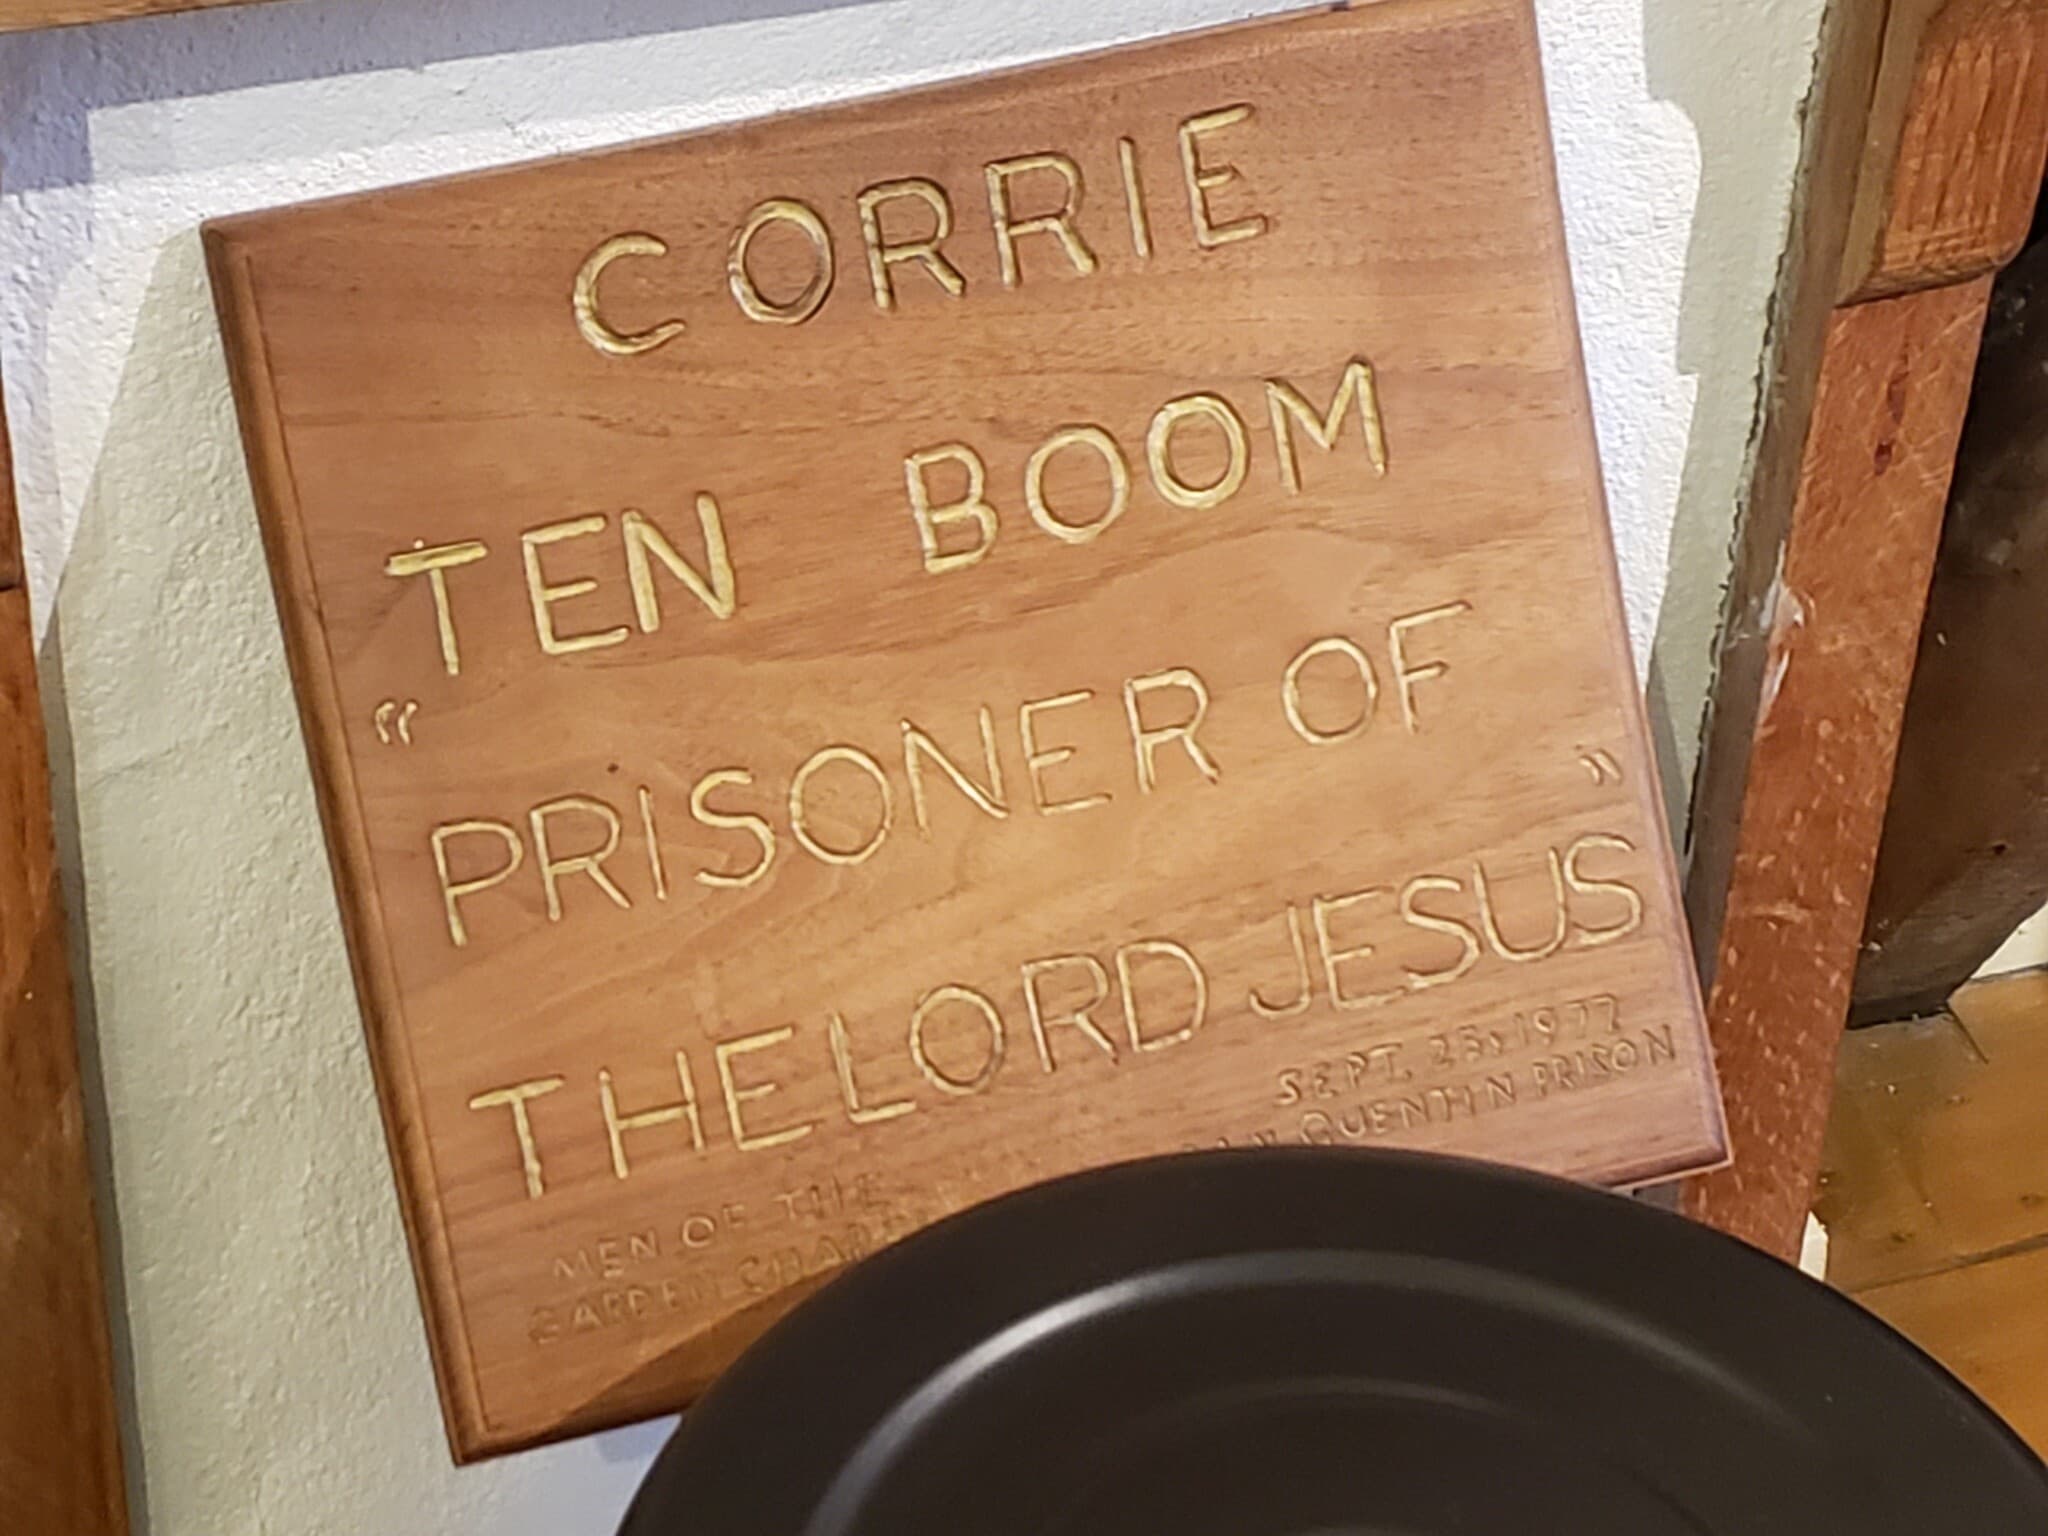 המתנה שקיבלה קורי טן בום ב־1977 מהאסירים בסן קוונטין (צילום: מאט ליבוביץ&#039;)